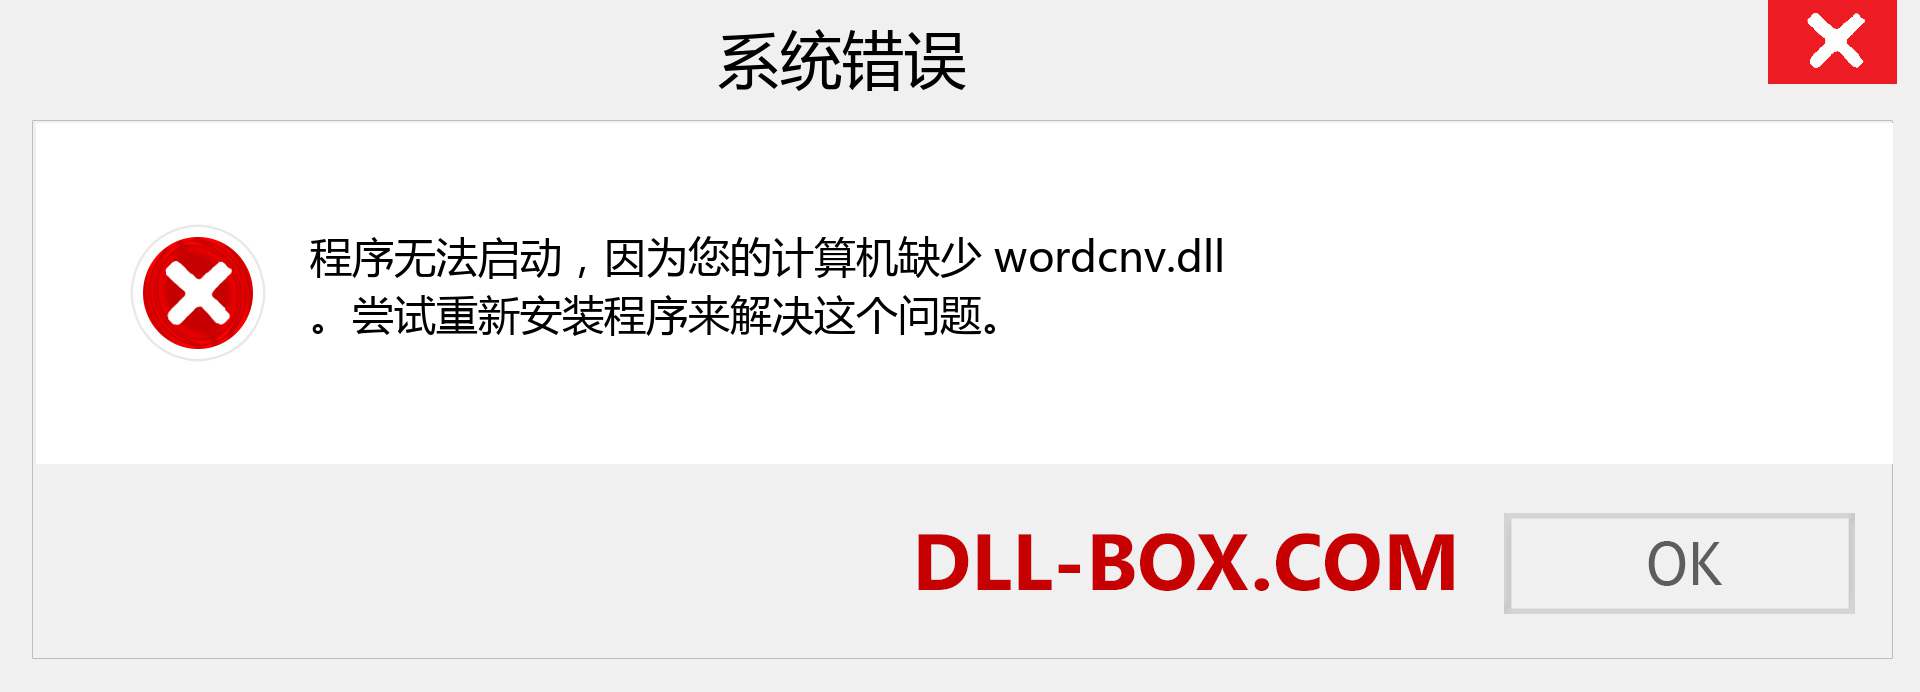 wordcnv.dll 文件丢失？。 适用于 Windows 7、8、10 的下载 - 修复 Windows、照片、图像上的 wordcnv dll 丢失错误